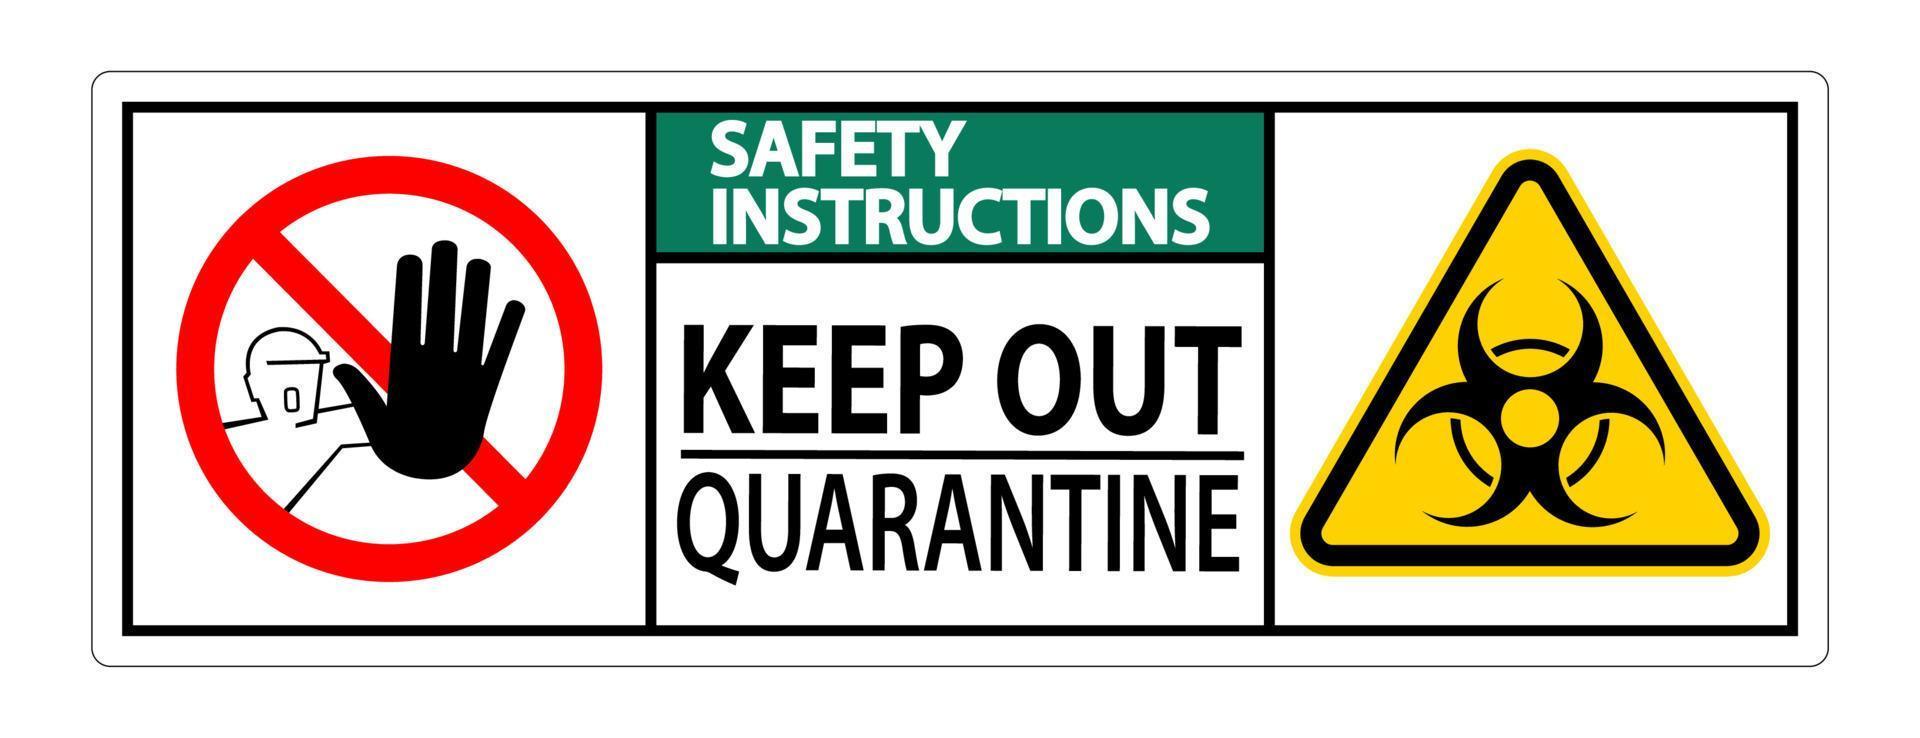 veiligheidsinstructies houden quarantaine teken geïsoleerd op een witte achtergrond, vector illustratie eps.10